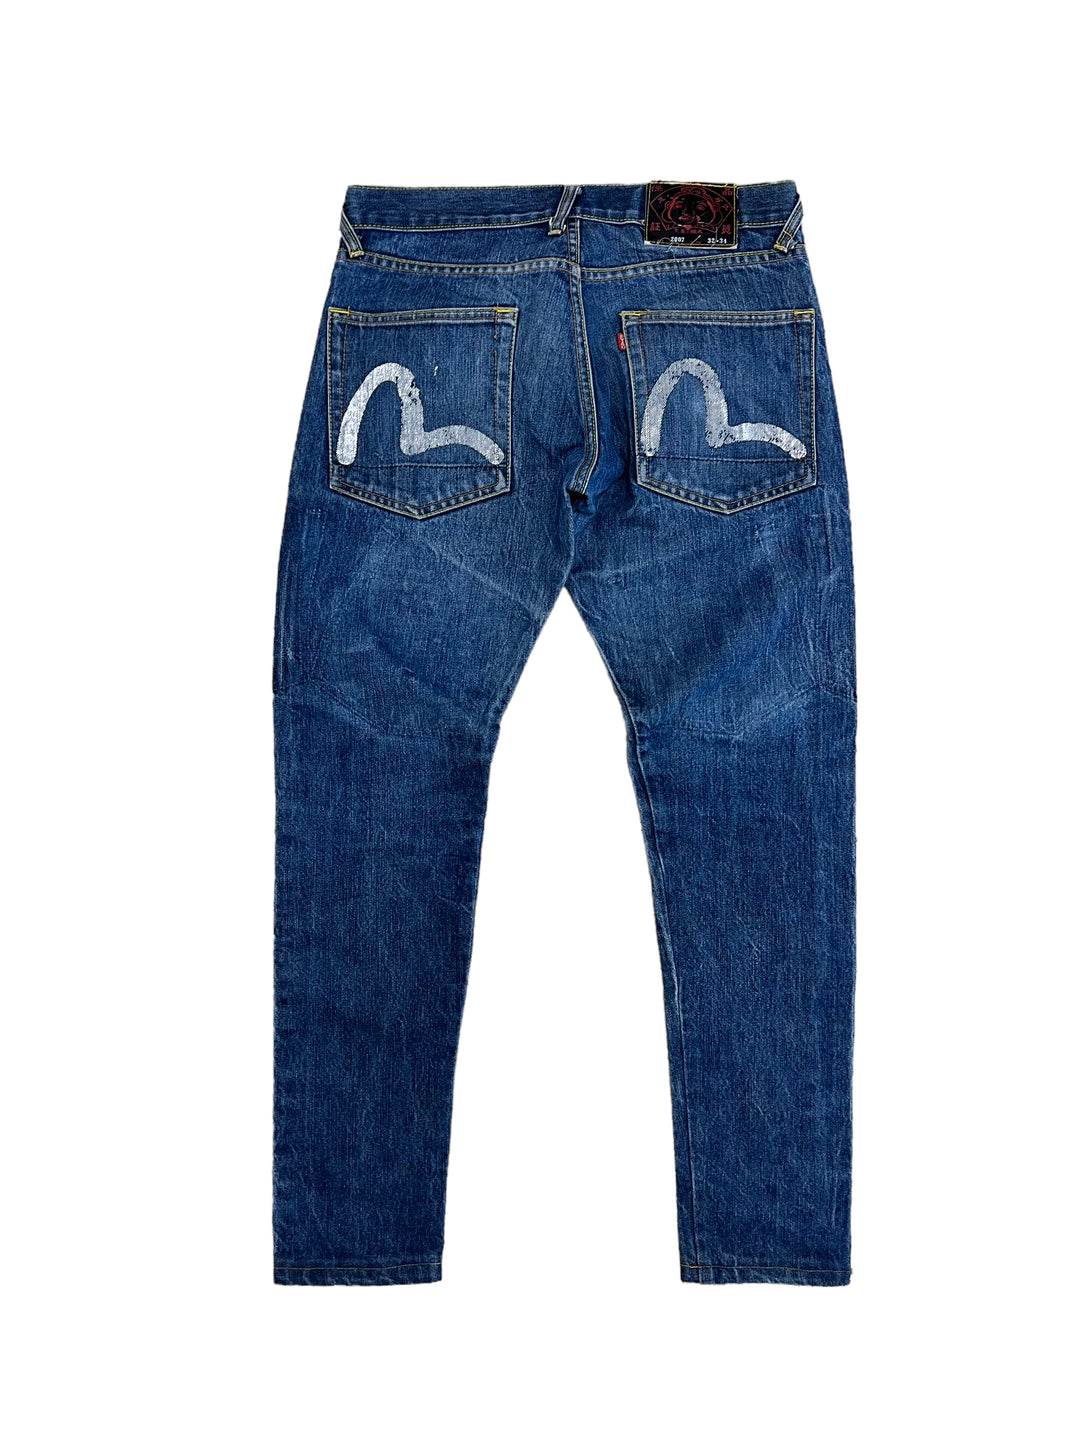 Evisu Skinny Jeans Men’s Medium 32x34